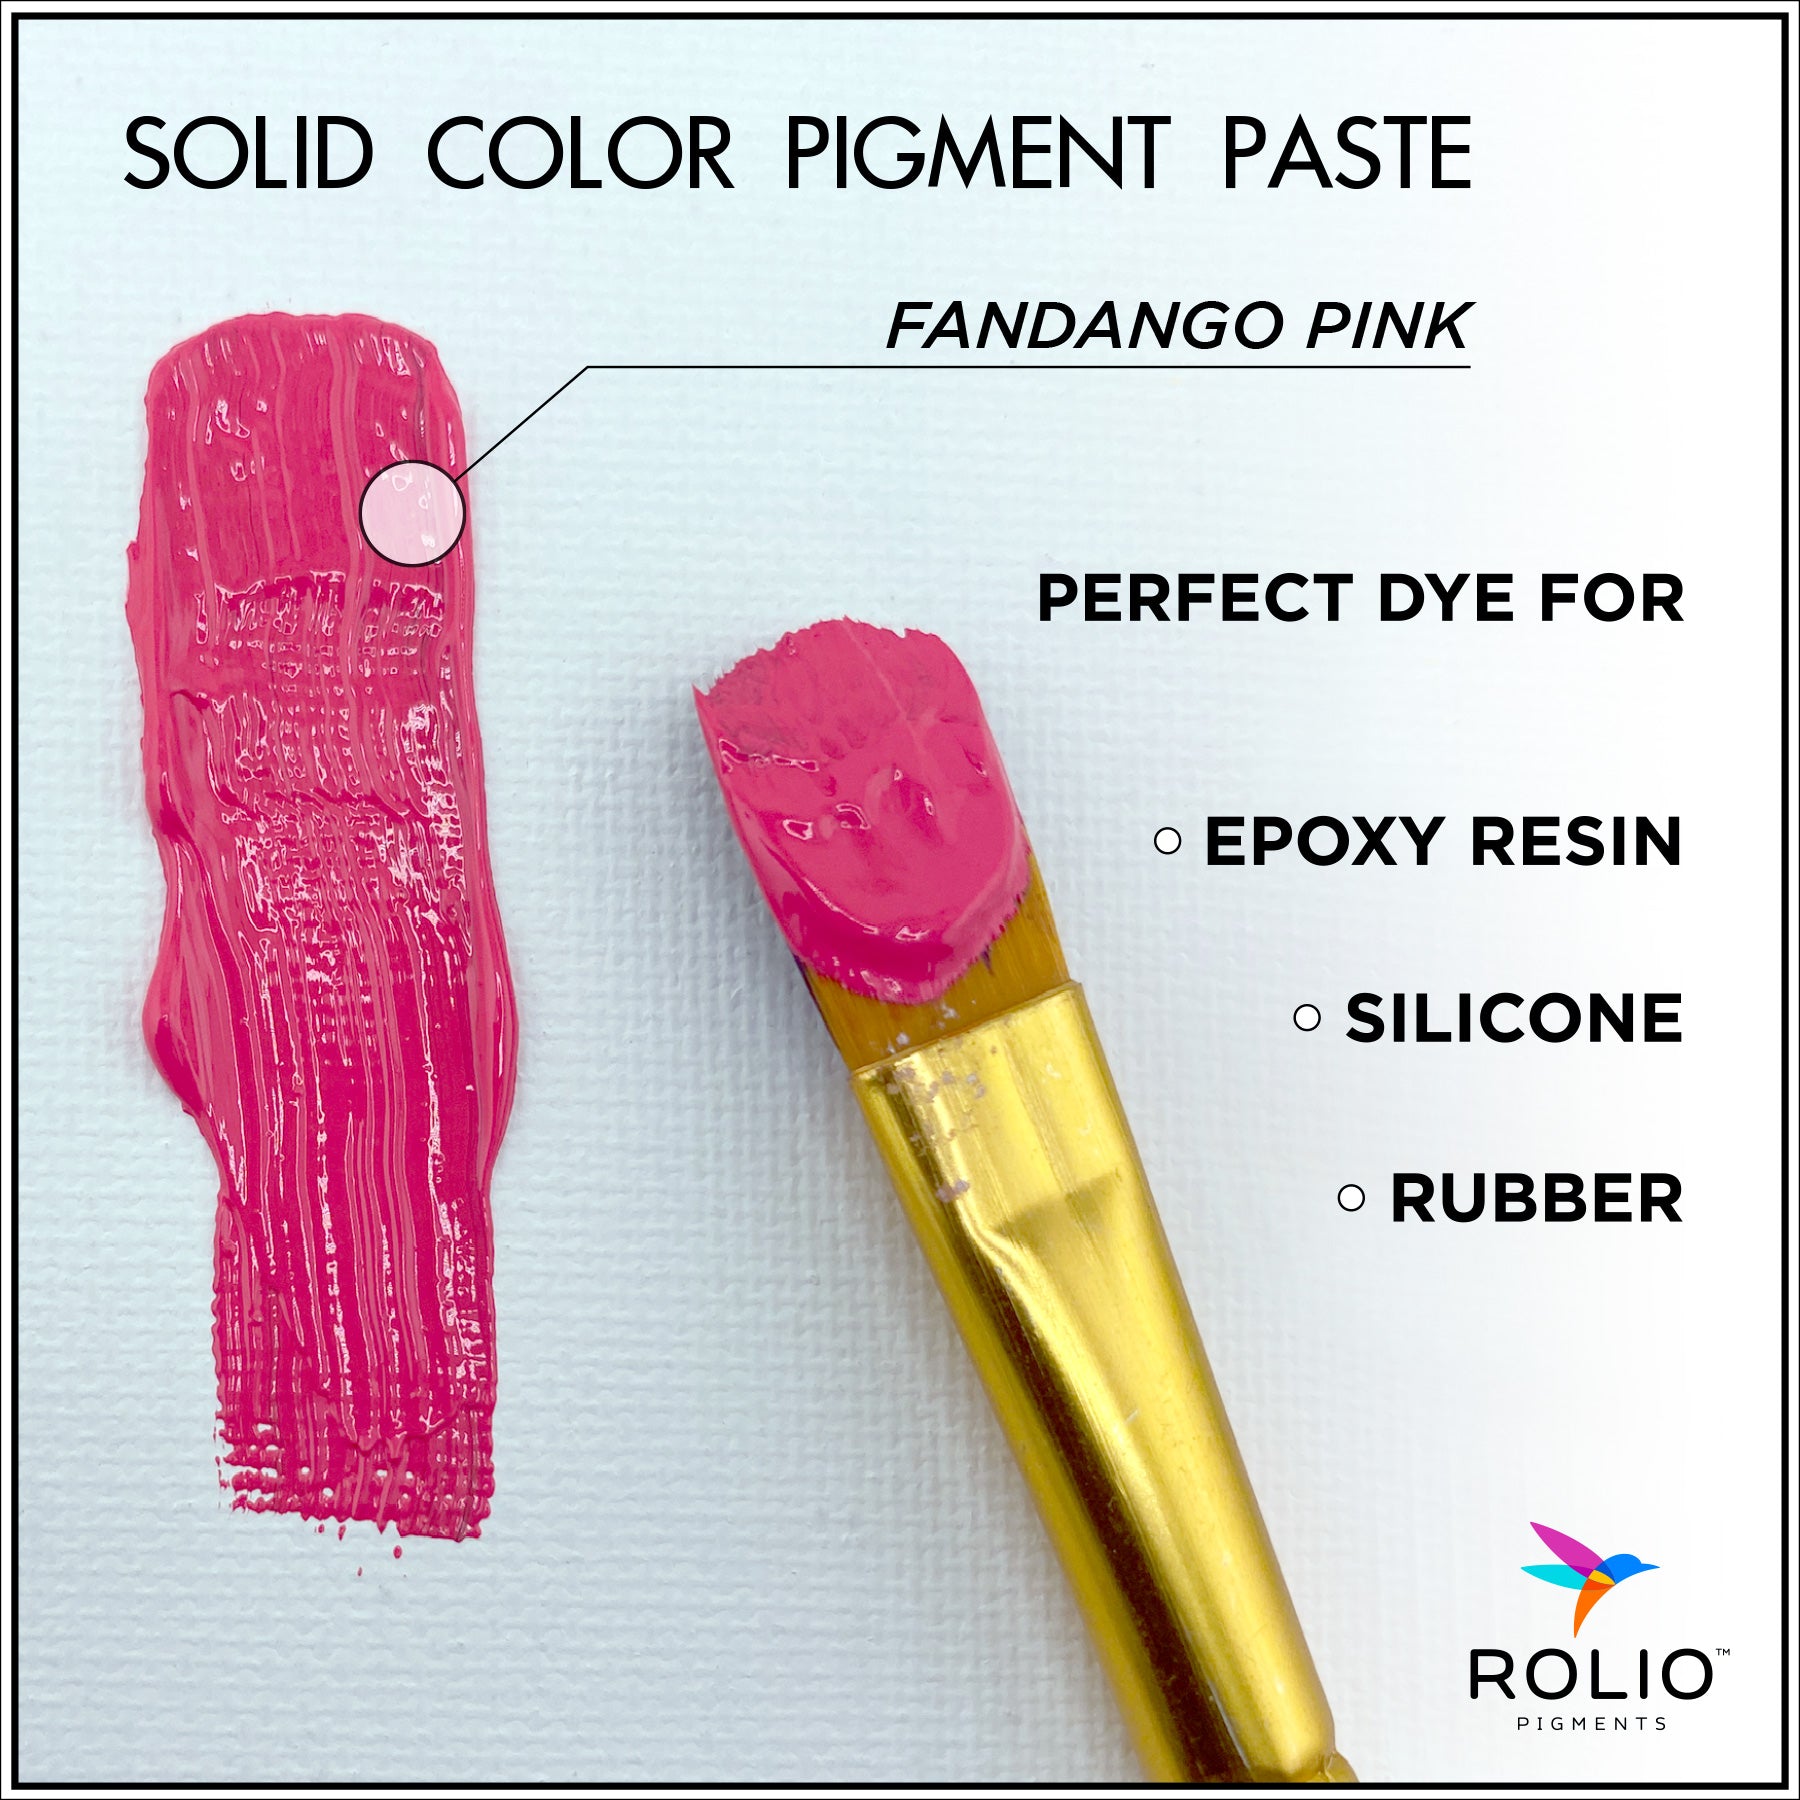 French-03-Rose-Pigment-Paste-Description.jpg